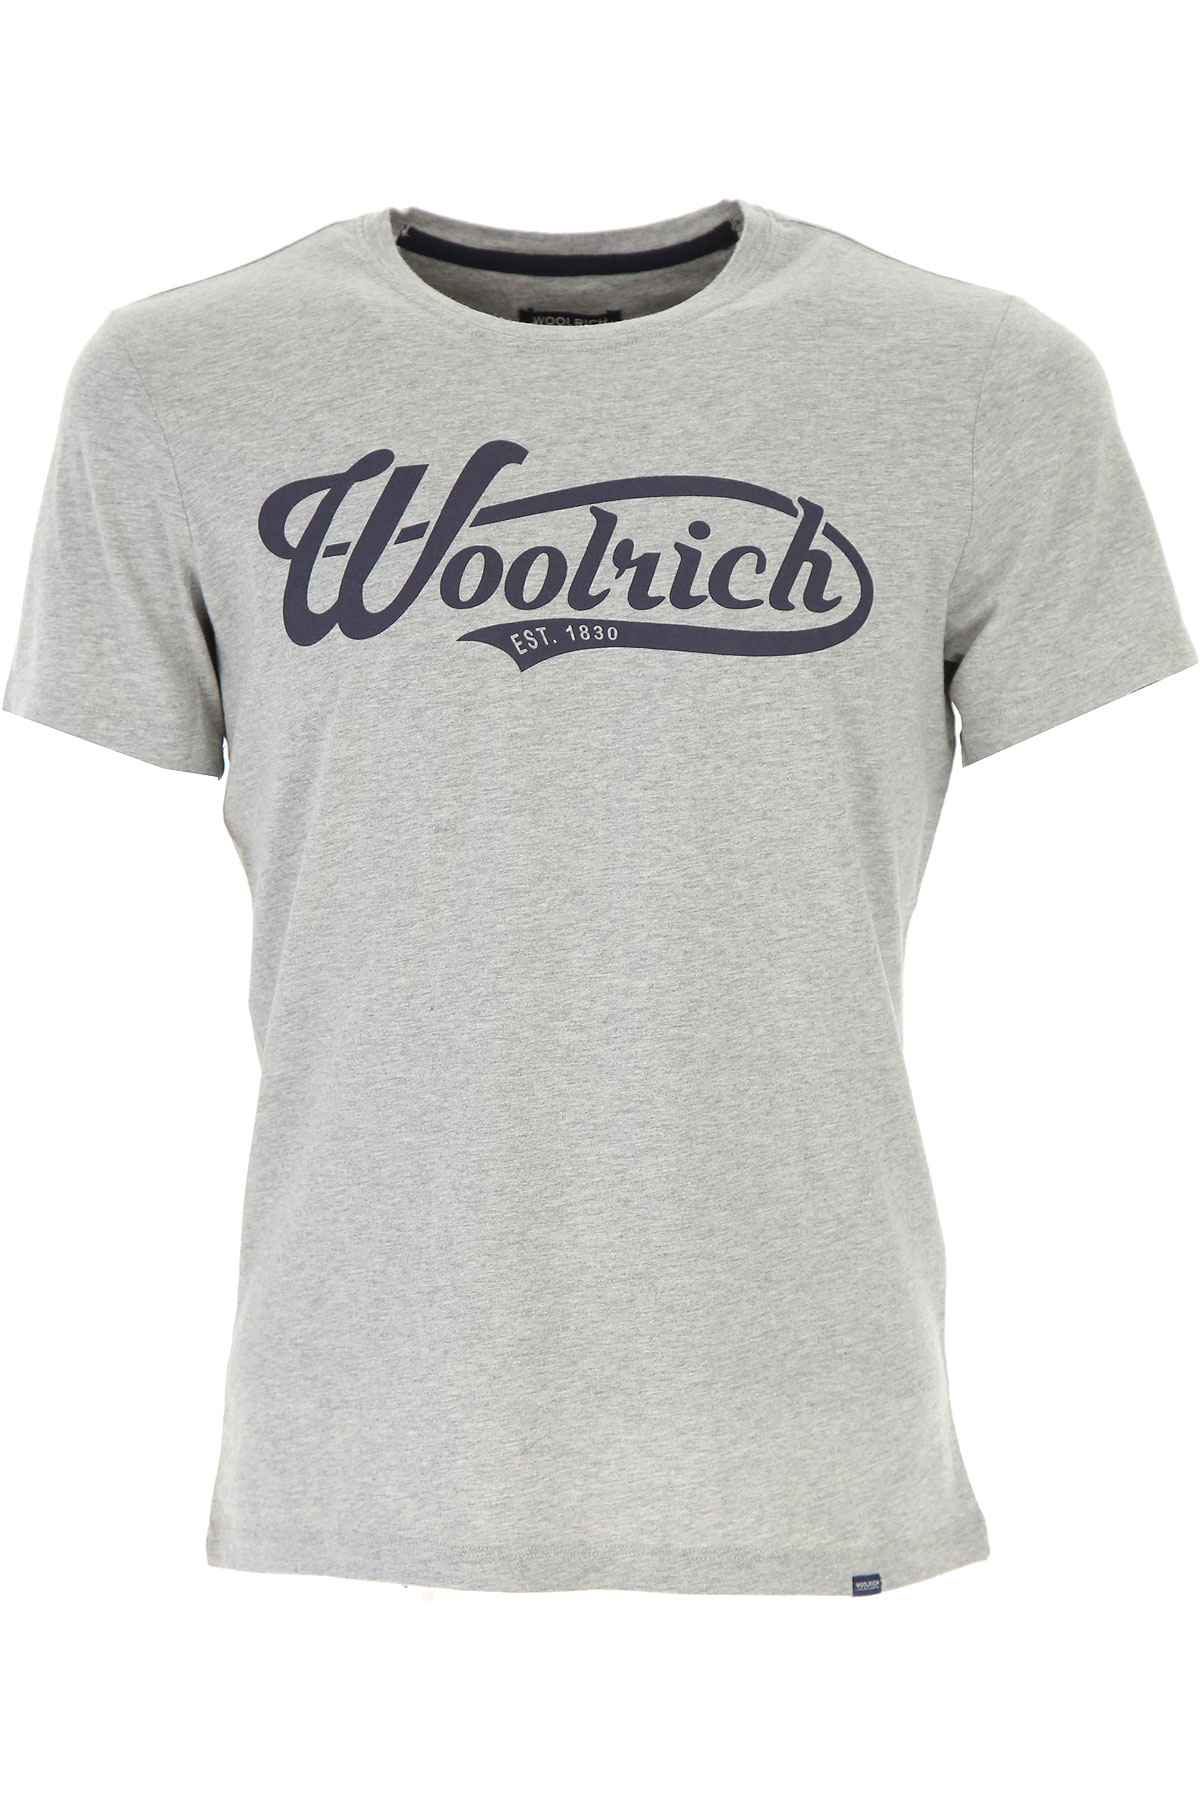 Woolrich T-shirt Homme, Gris, Coton, 2017, L M S XL